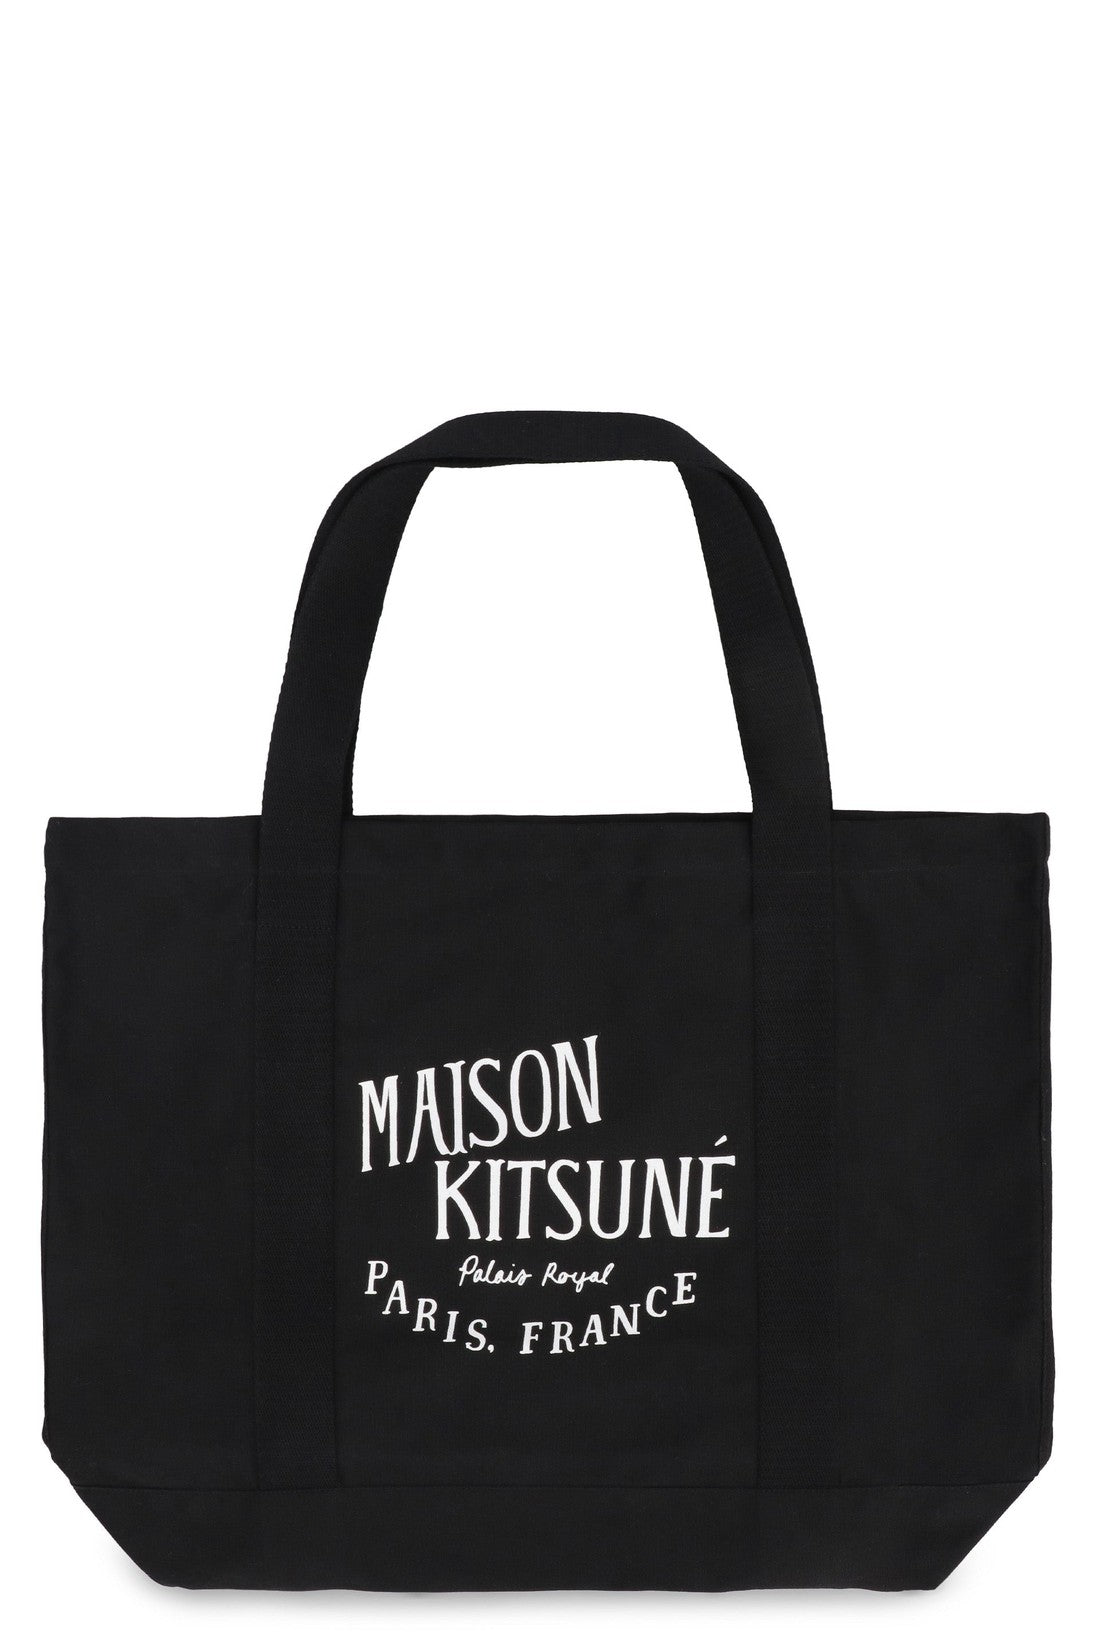 Maison Kitsuné-OUTLET-SALE-Canvas shopping bag-ARCHIVIST